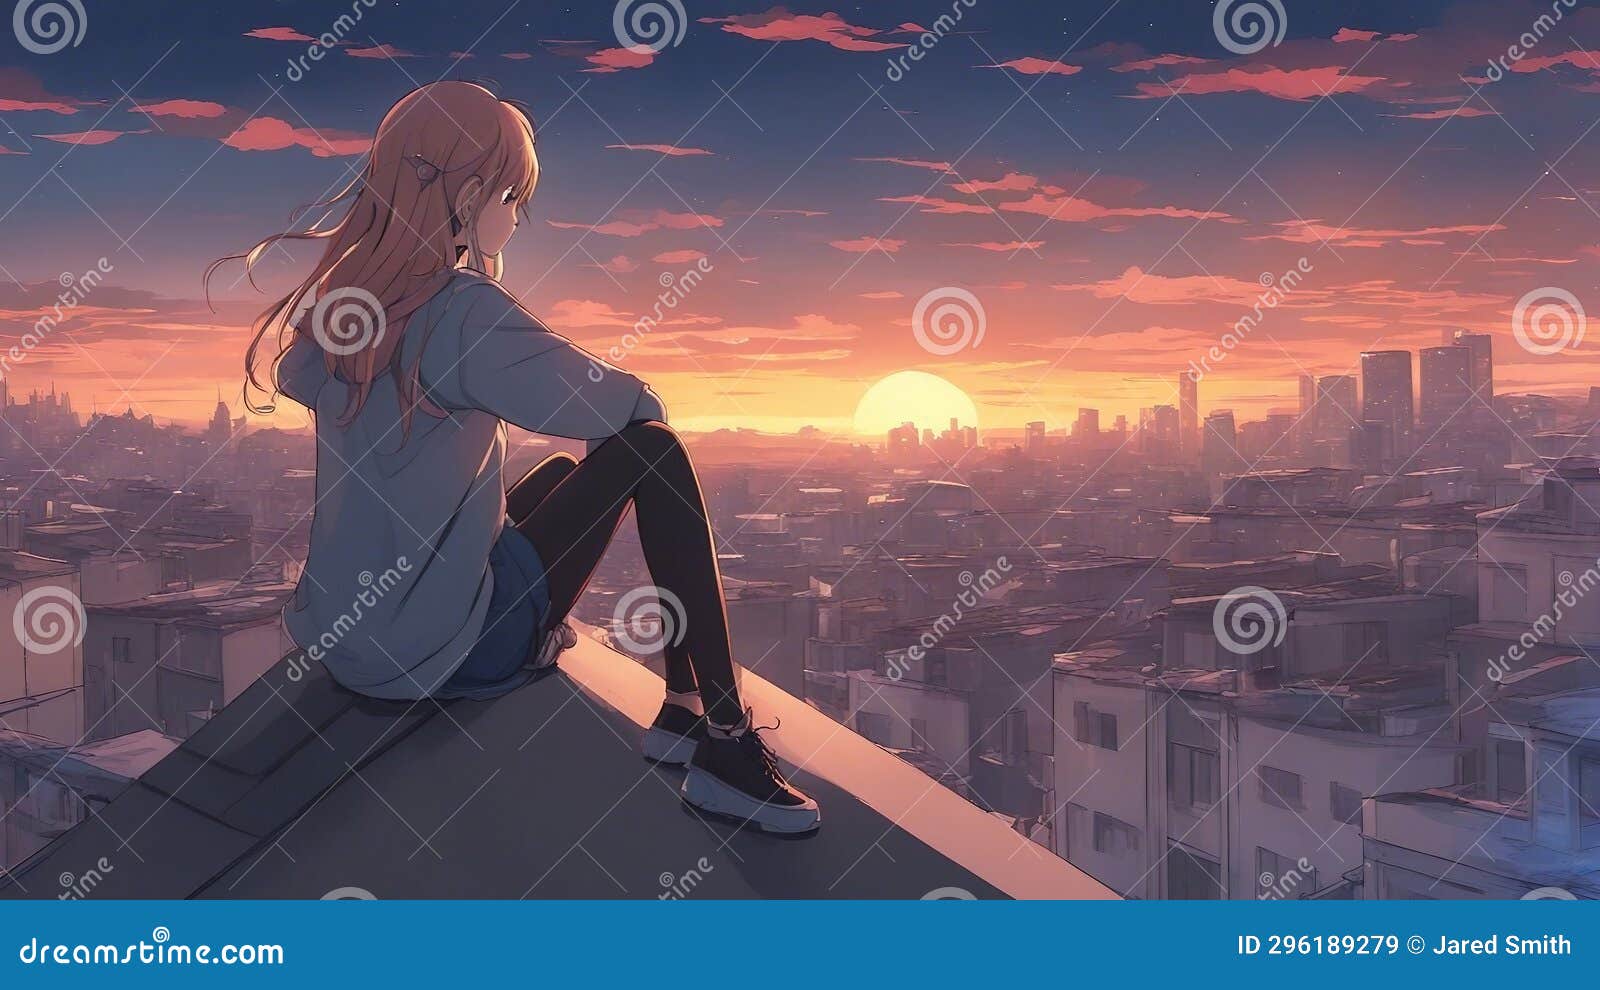 HD wallpaper: Anime Girls, Flying, Joy | Wallpaper Flare